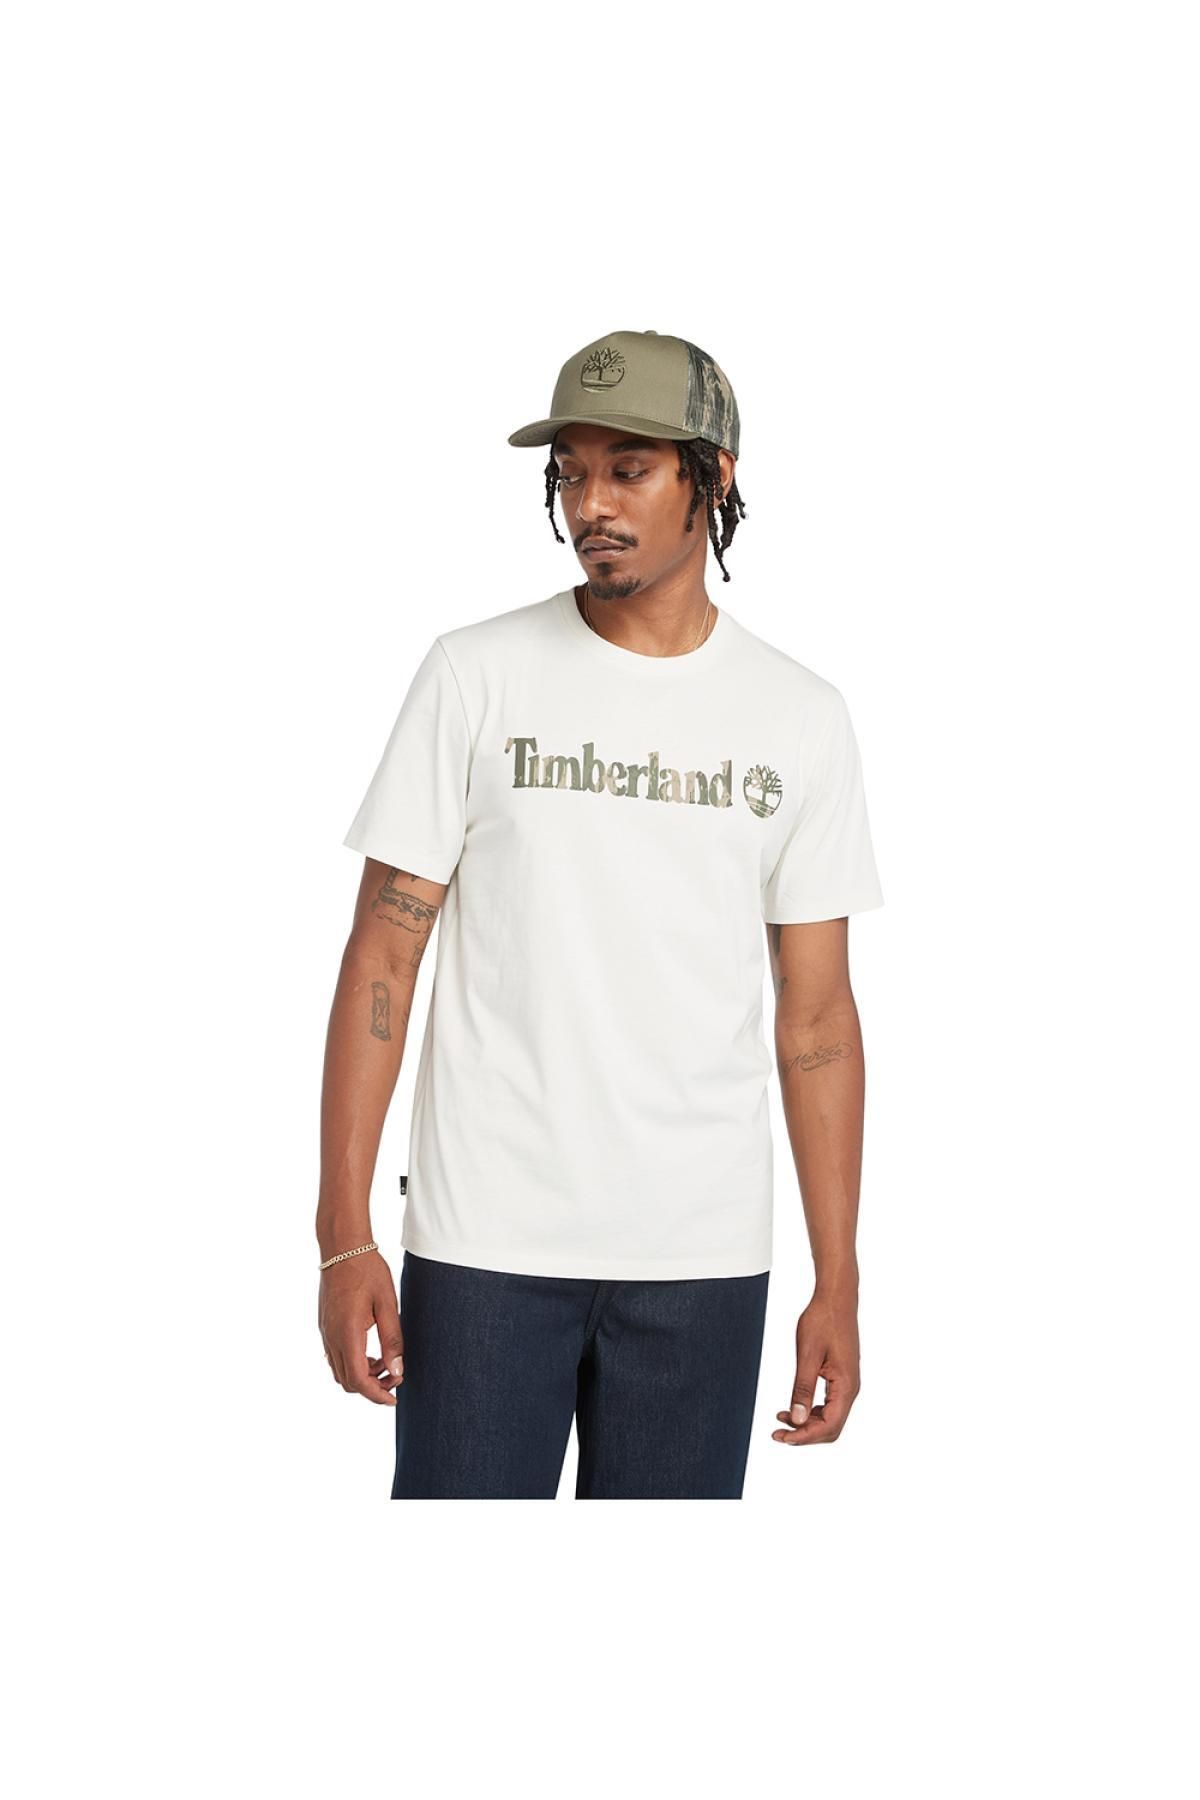 Timberland Tb0A5Unf Camo Linear Logo Tee Beyaz Erkek T-Shirt